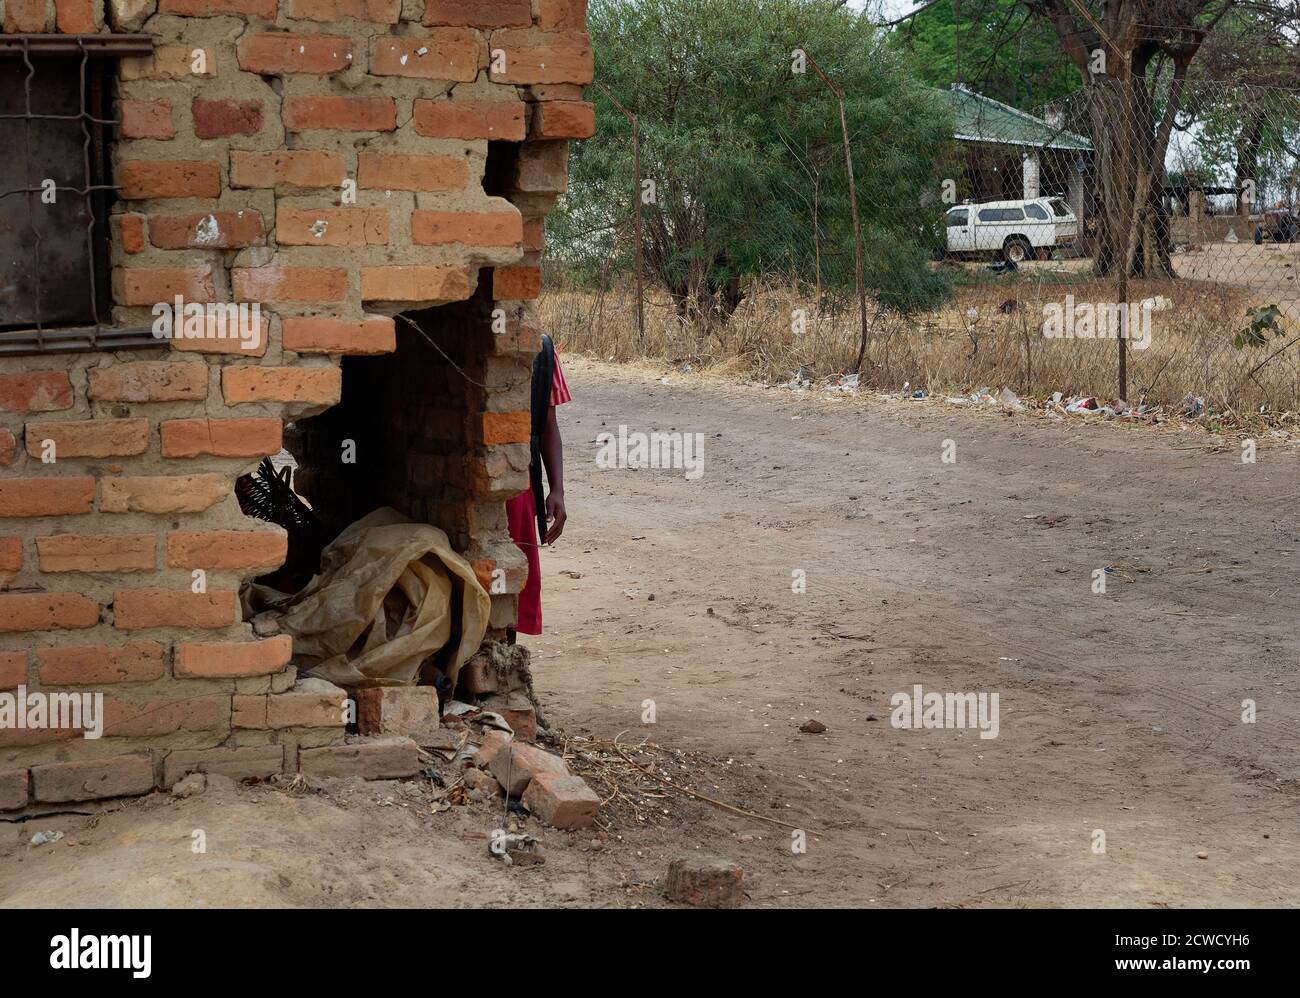 Schlechte Leben Straßenlandschaft aus dem Land Straßen in Simbabwe. Armut, Armut und Elend ohne grundlegende staatliche Dienstleistungen, ruiniert oder zerstört bui Stockfoto